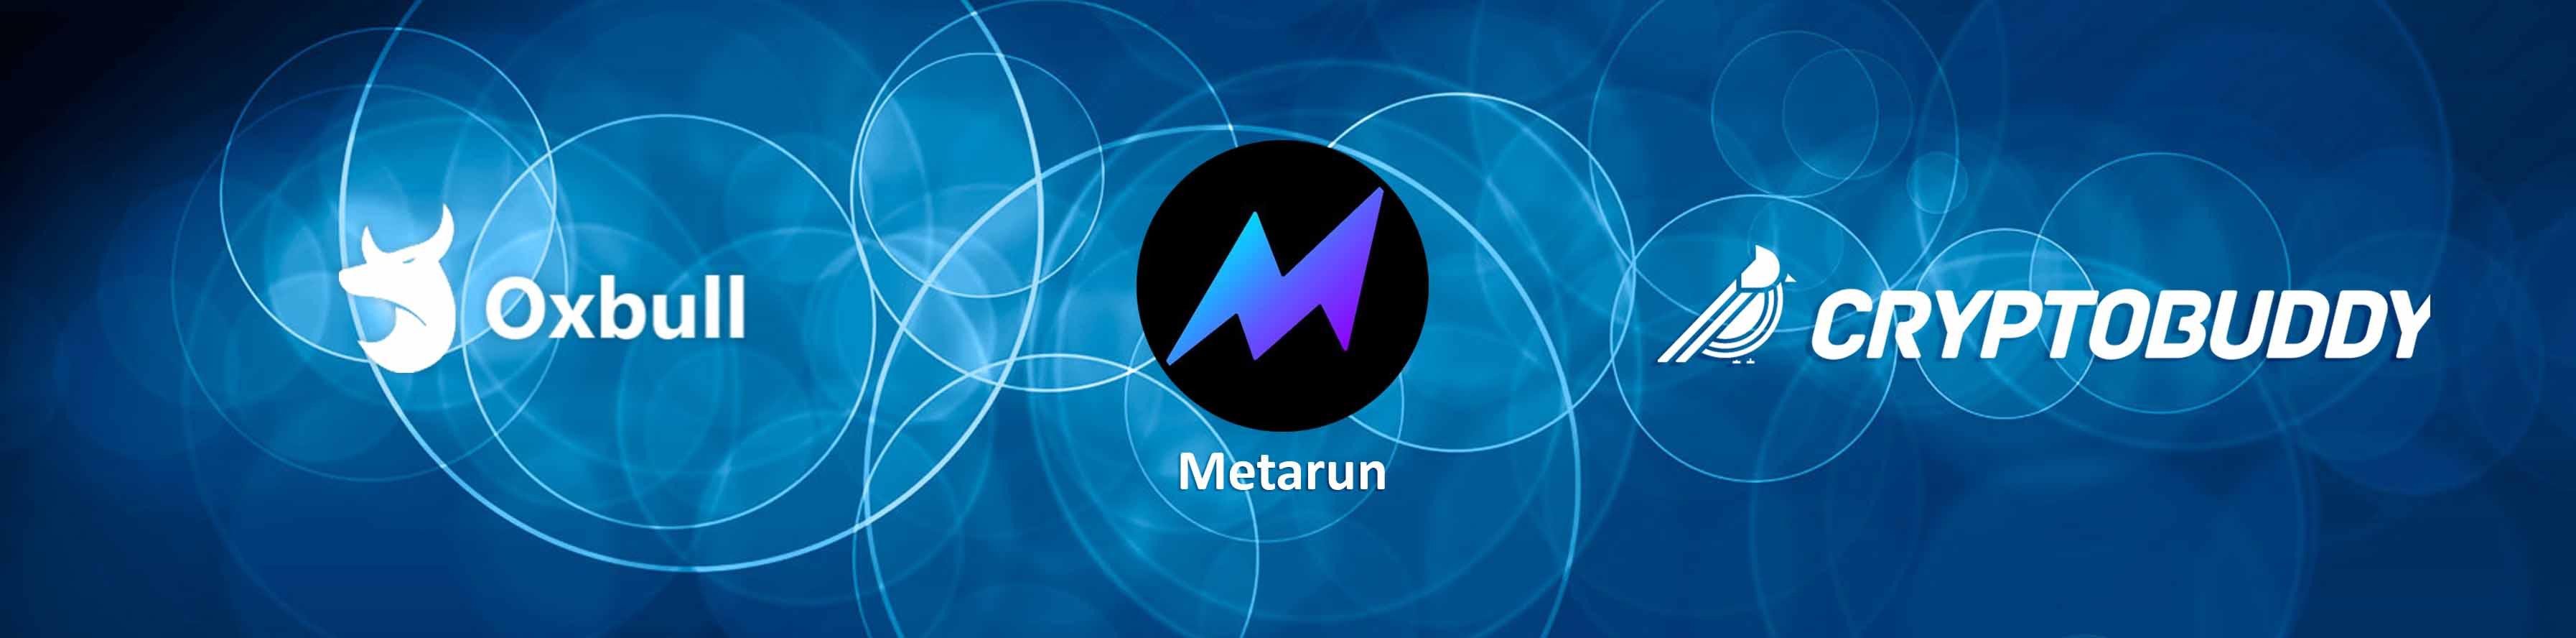 Metarun Oxbull IDO - Whitelist for Cryptobuddy Community